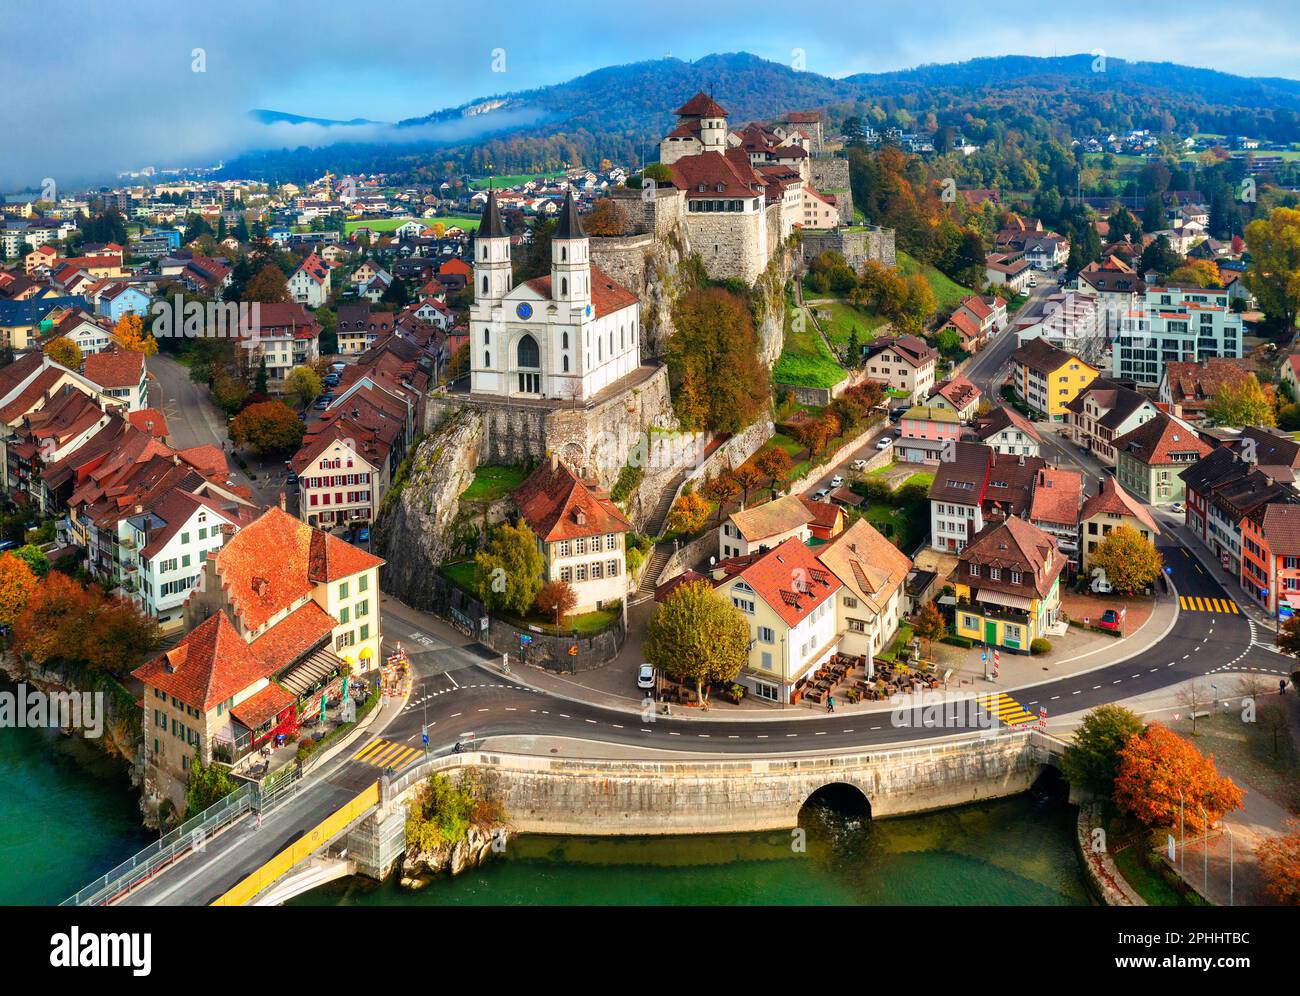 La vieille ville historique d'Aarburg et le château d'Aarburg sur la rivière Aare dans le canton d'Argau, en Suisse. Le château d'Aarburg est l'un des plus grands châteaux de Suisse. Banque D'Images